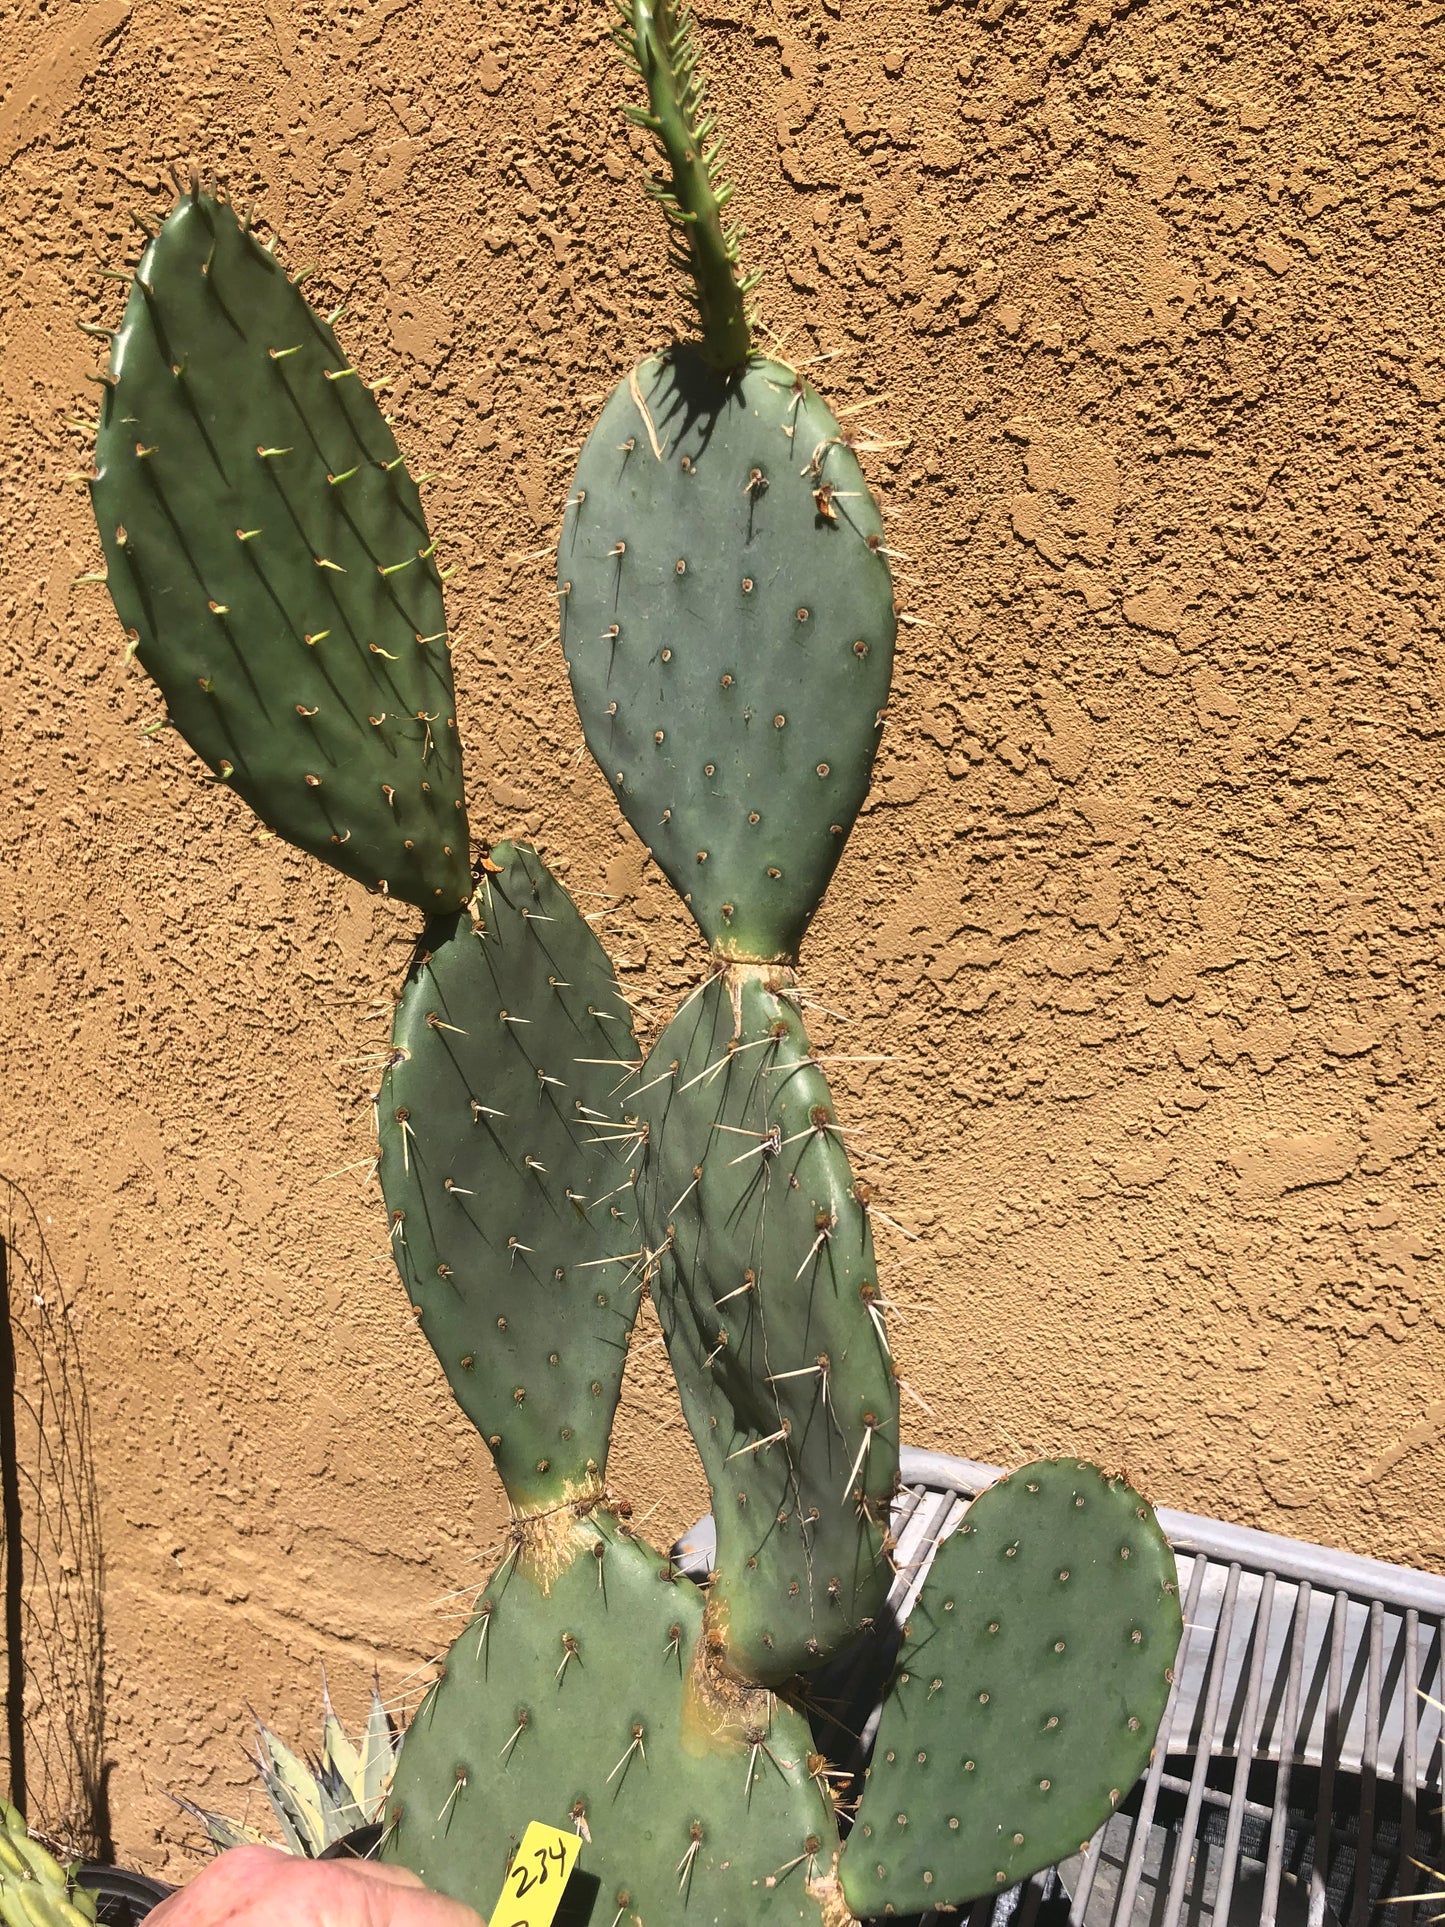 Opuntia engelmannii "Texas Prickly Pear" 23"Tall 14"Wide #234Y